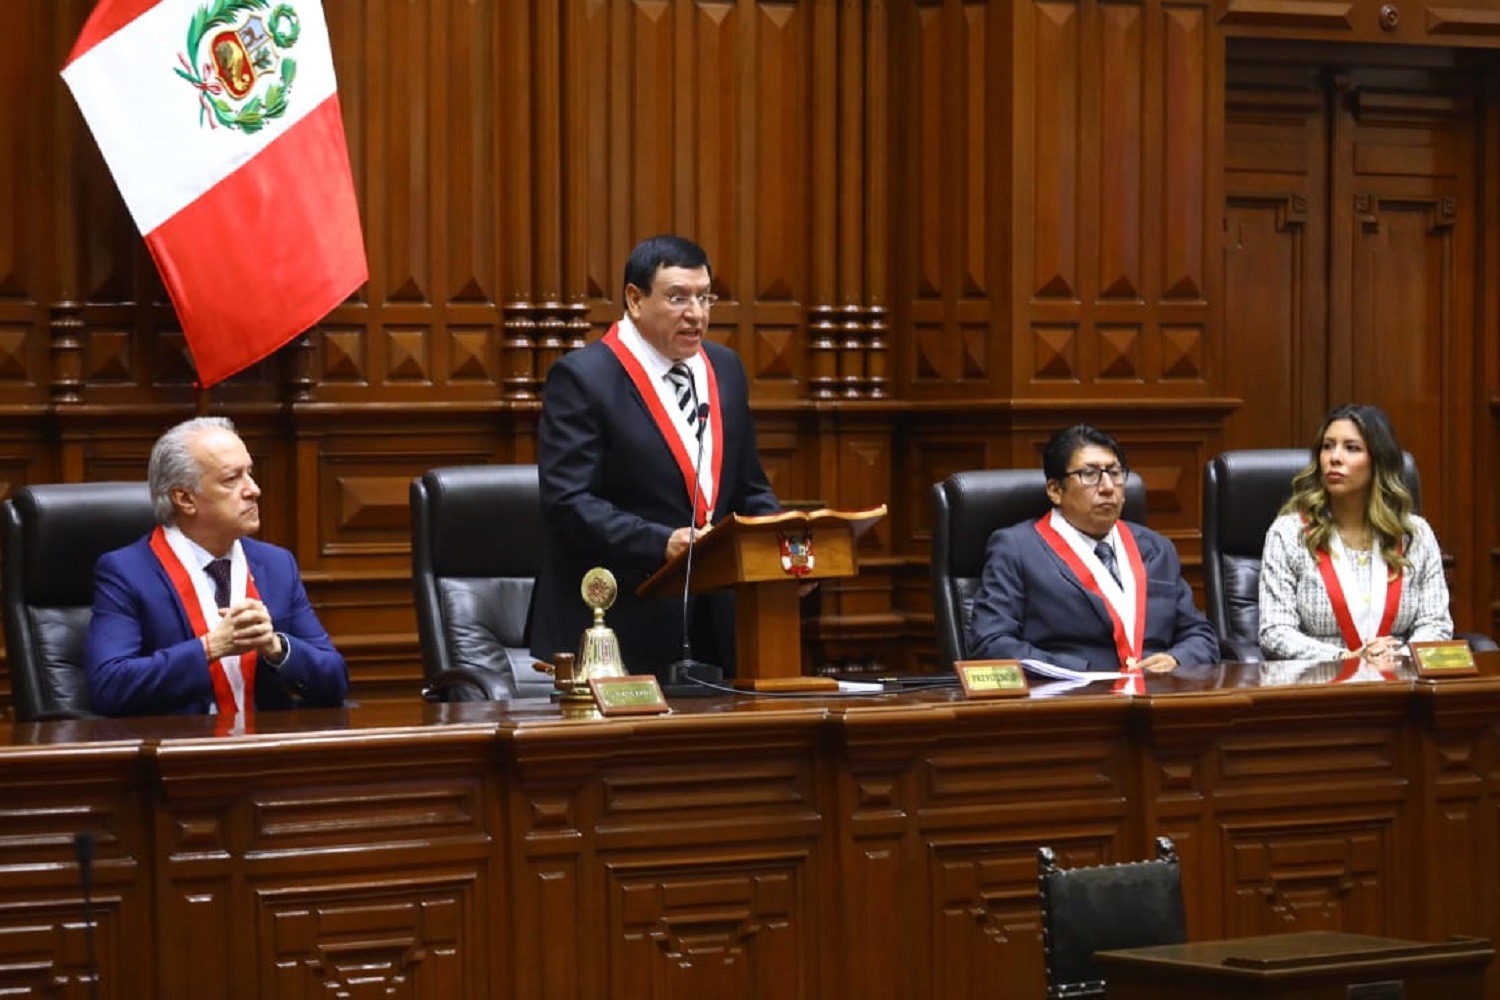 Alejandro Soto: El Congreso es la garantía de la libertad y de la democracia, sostuvo en la sesión solemne por el 201 aniversario del Parlamento.